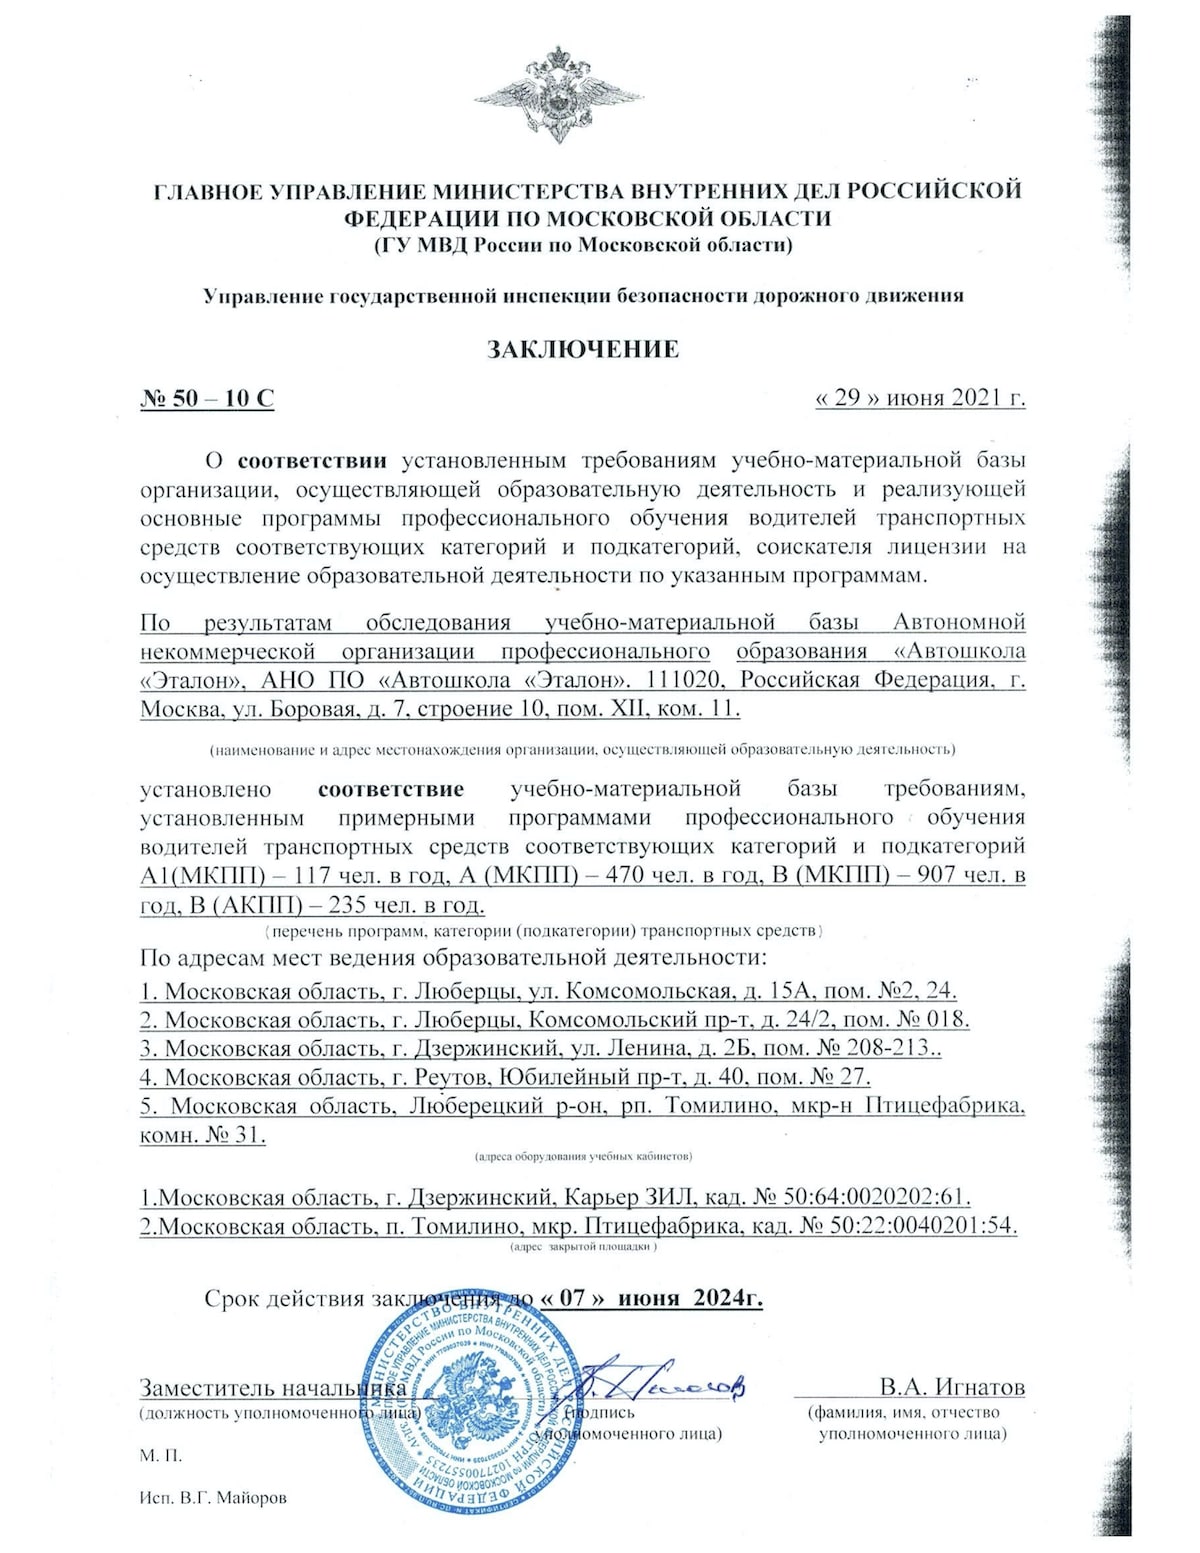 Заключение ГИБДД Московской области до 2024 года для Автошколы Эталон